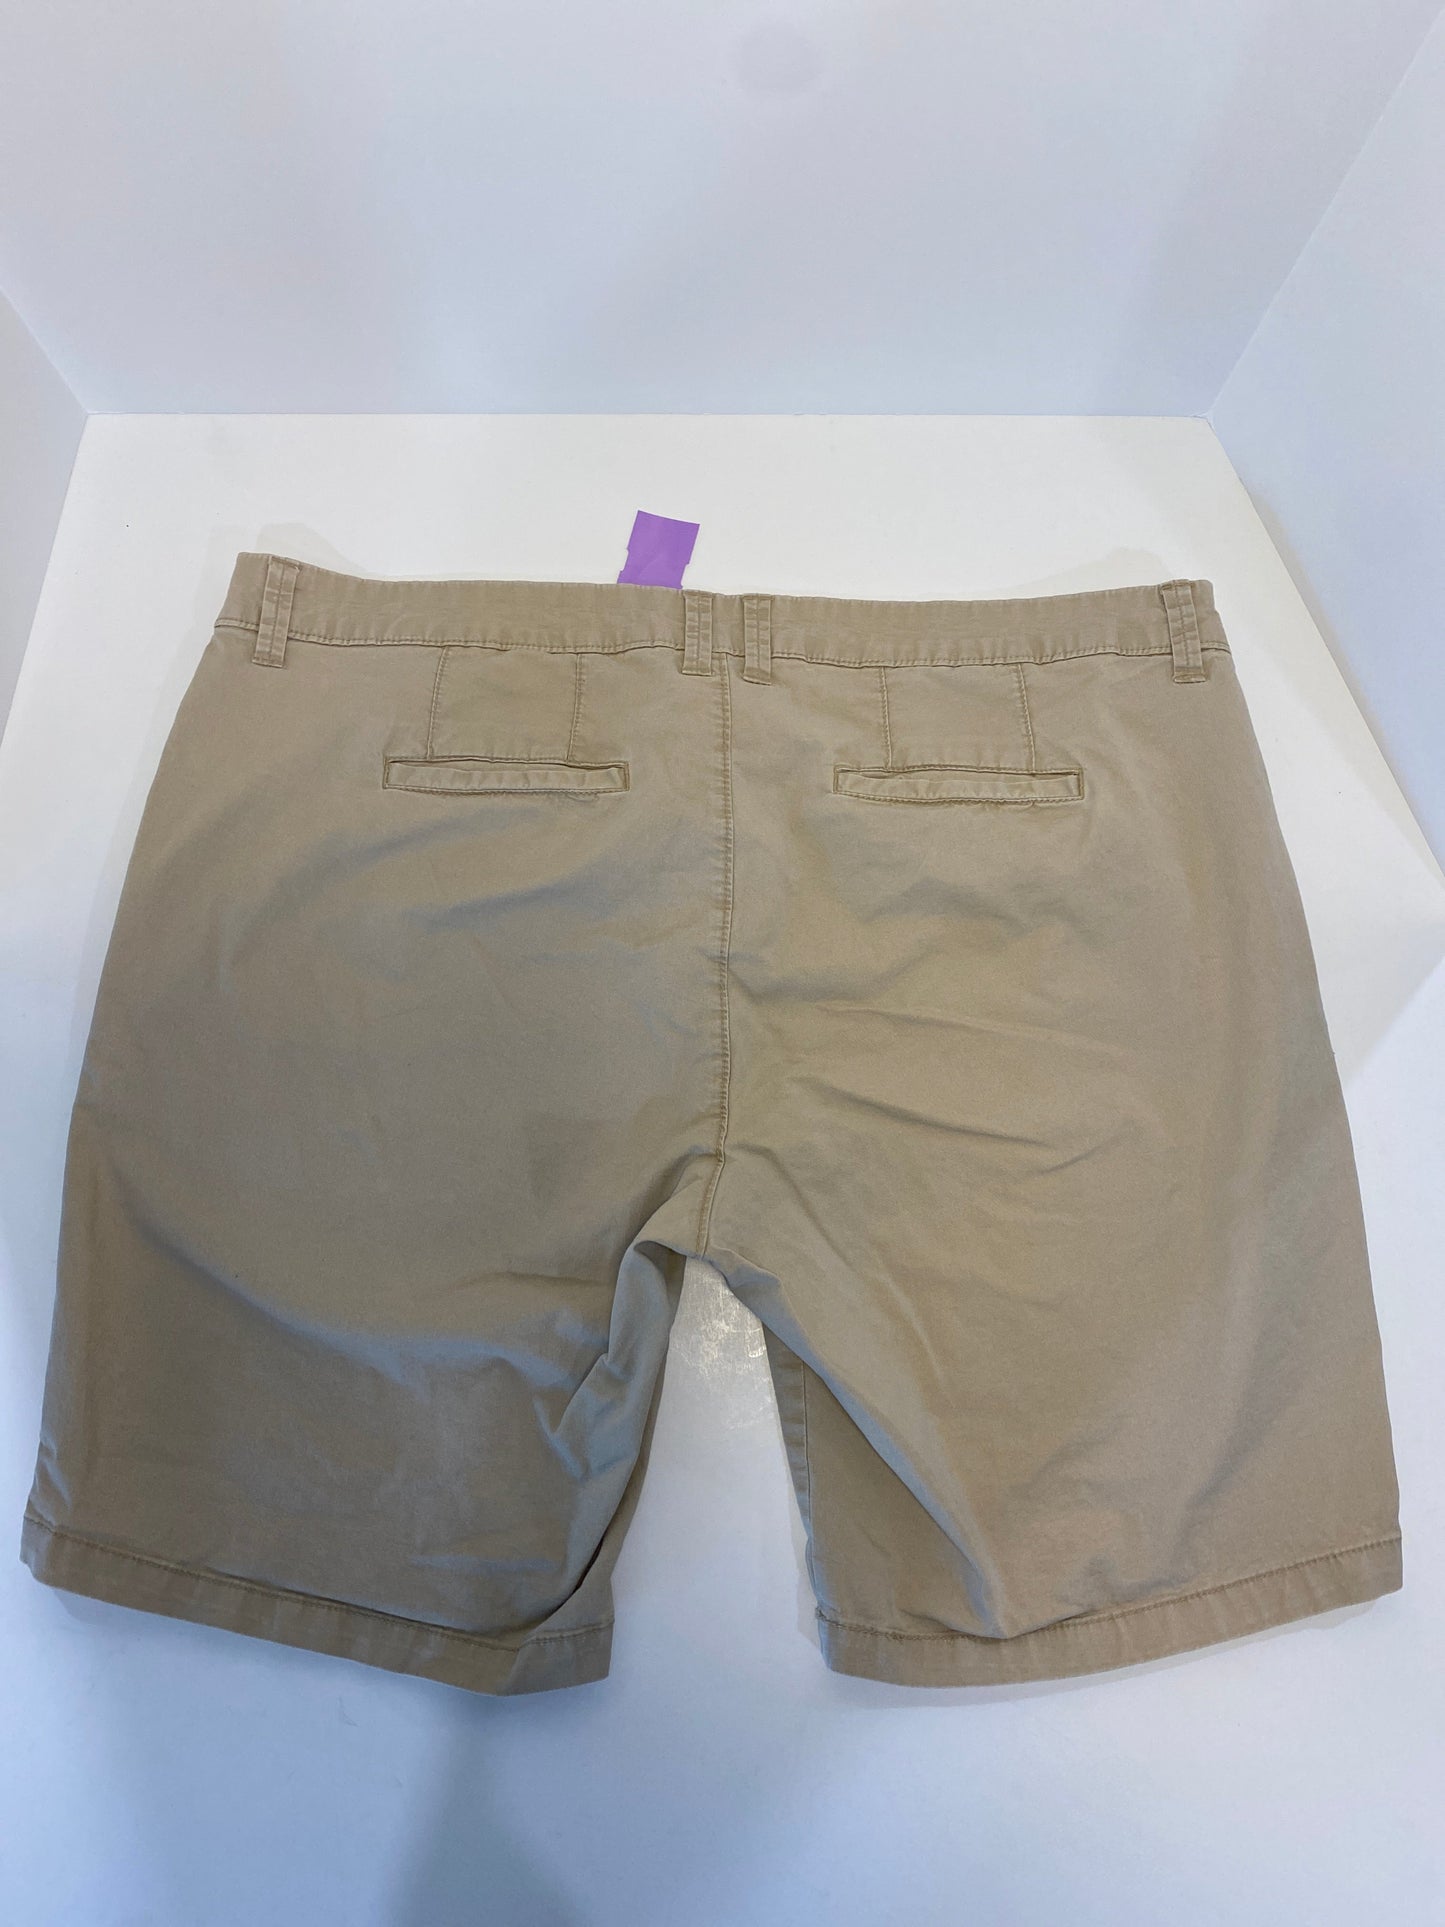 Tan Shorts Old Navy, Size 18